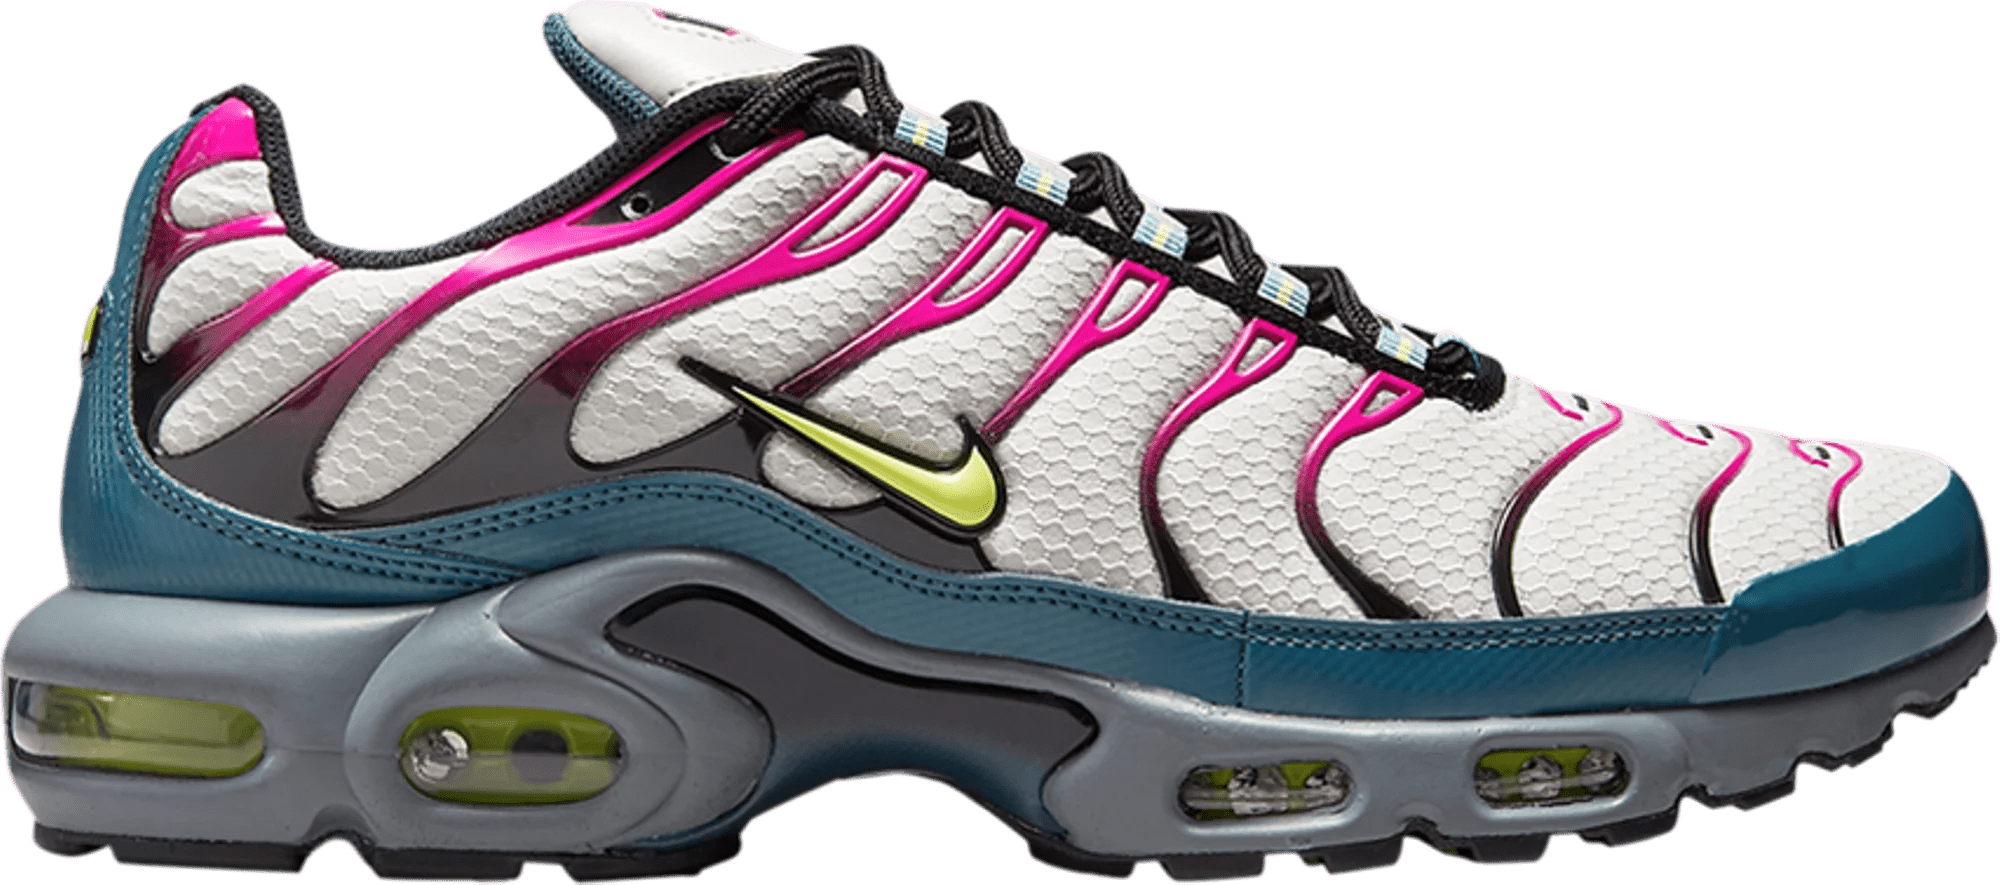 sneakers Nike Air Max Plus TN Pink Teal Volt Men's